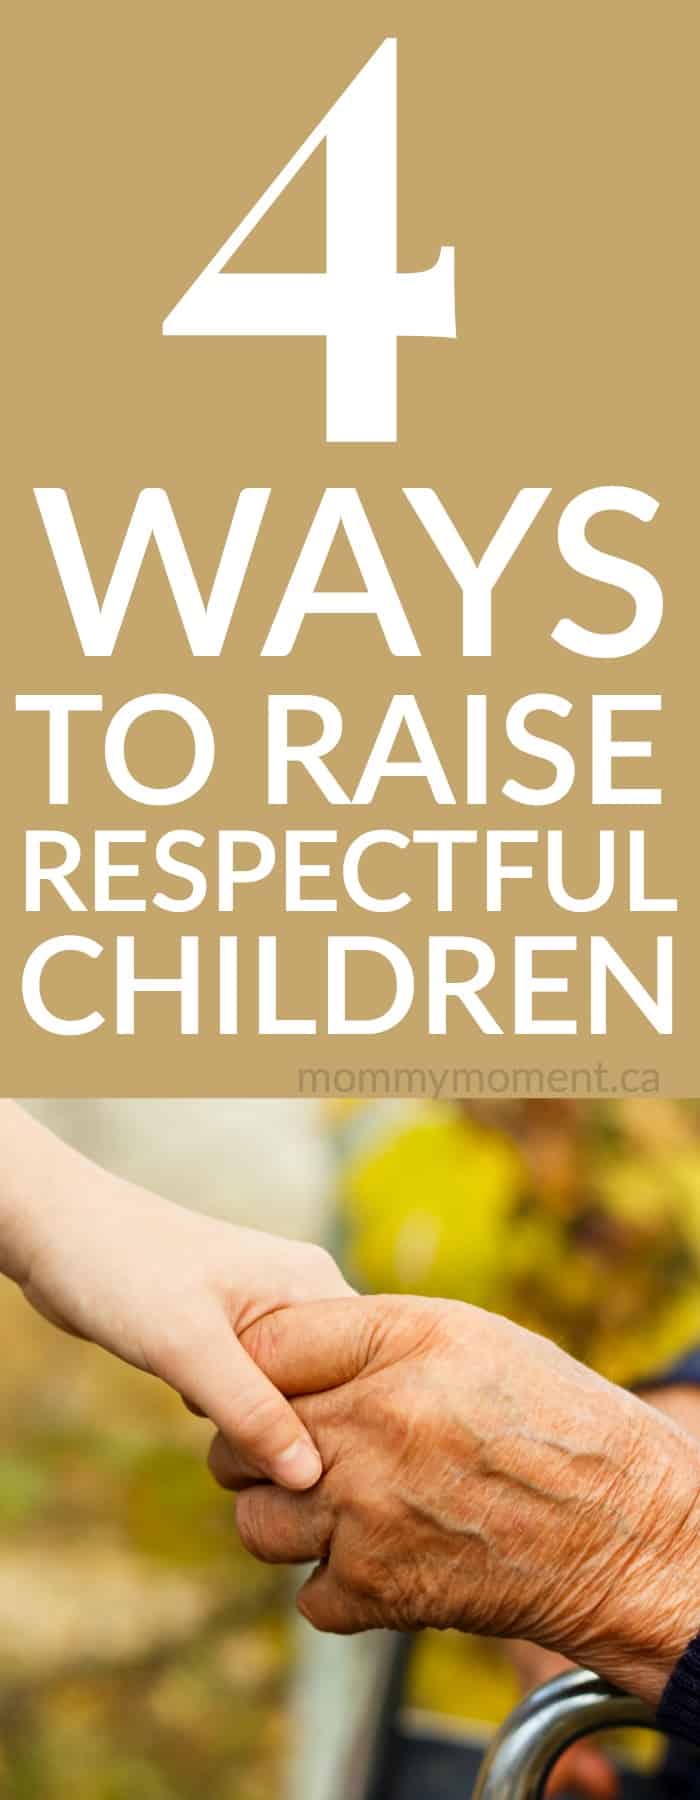 4 ways to raise respectful children